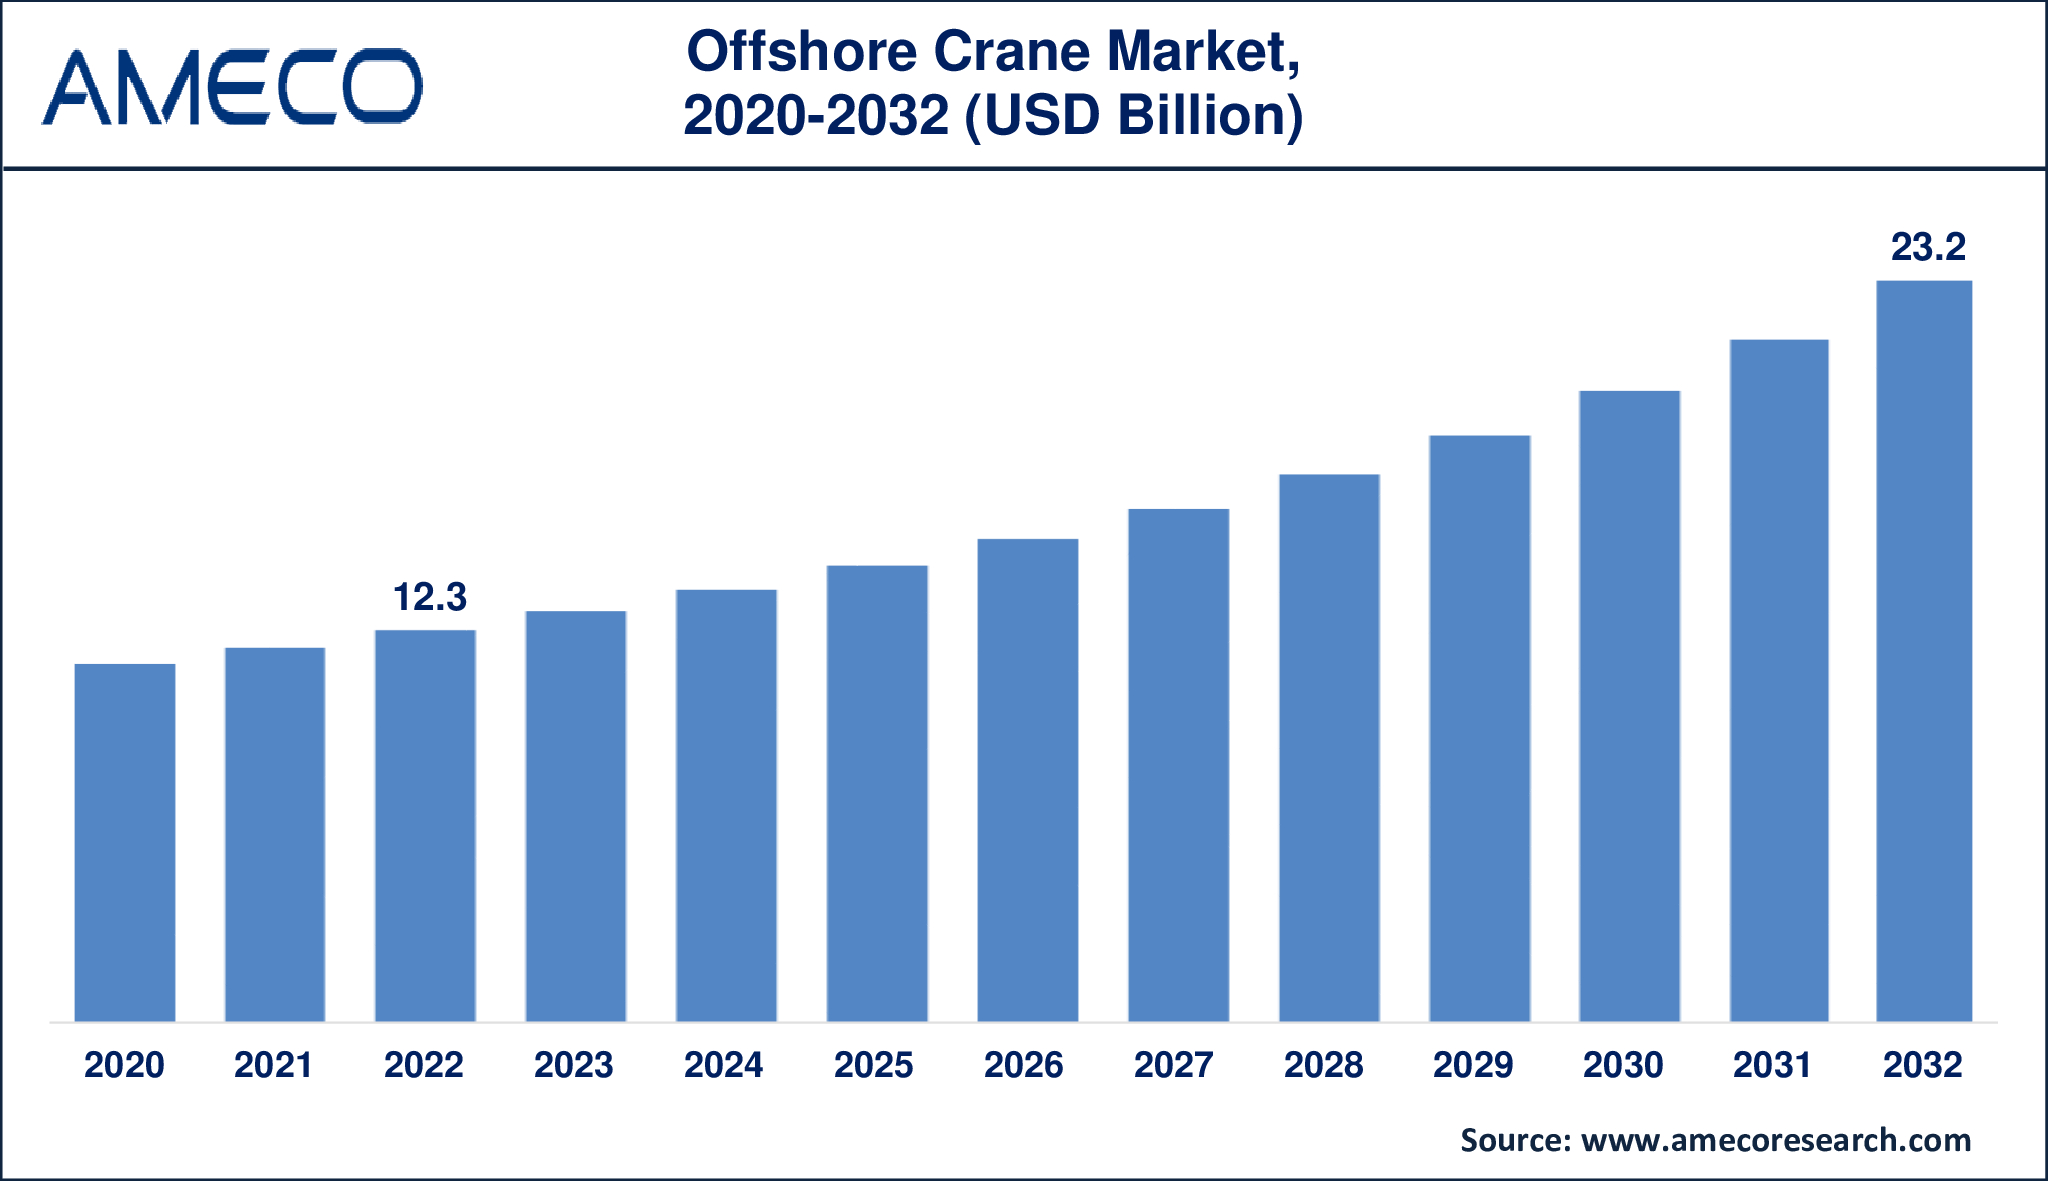 Offshore Crane Market Dynamics